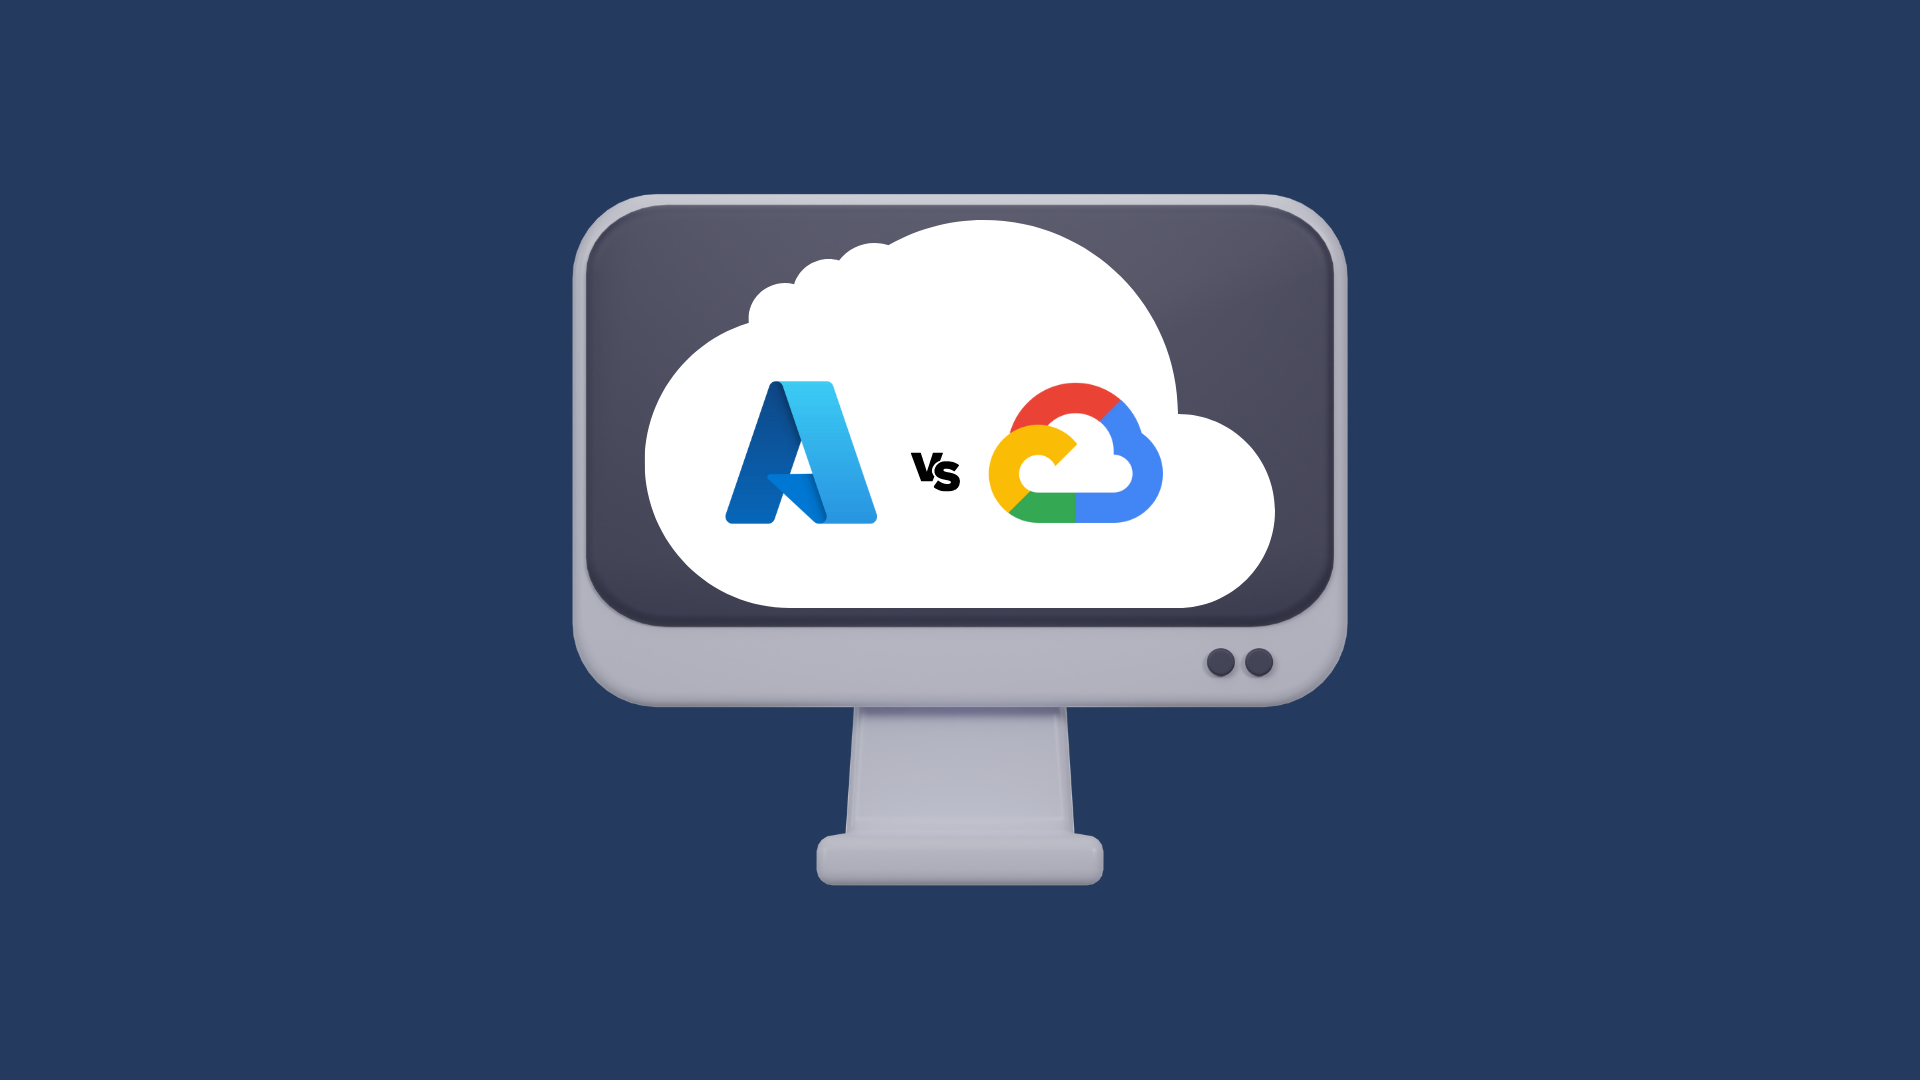 Comparativa Detallada: Azure vs Google Cloud